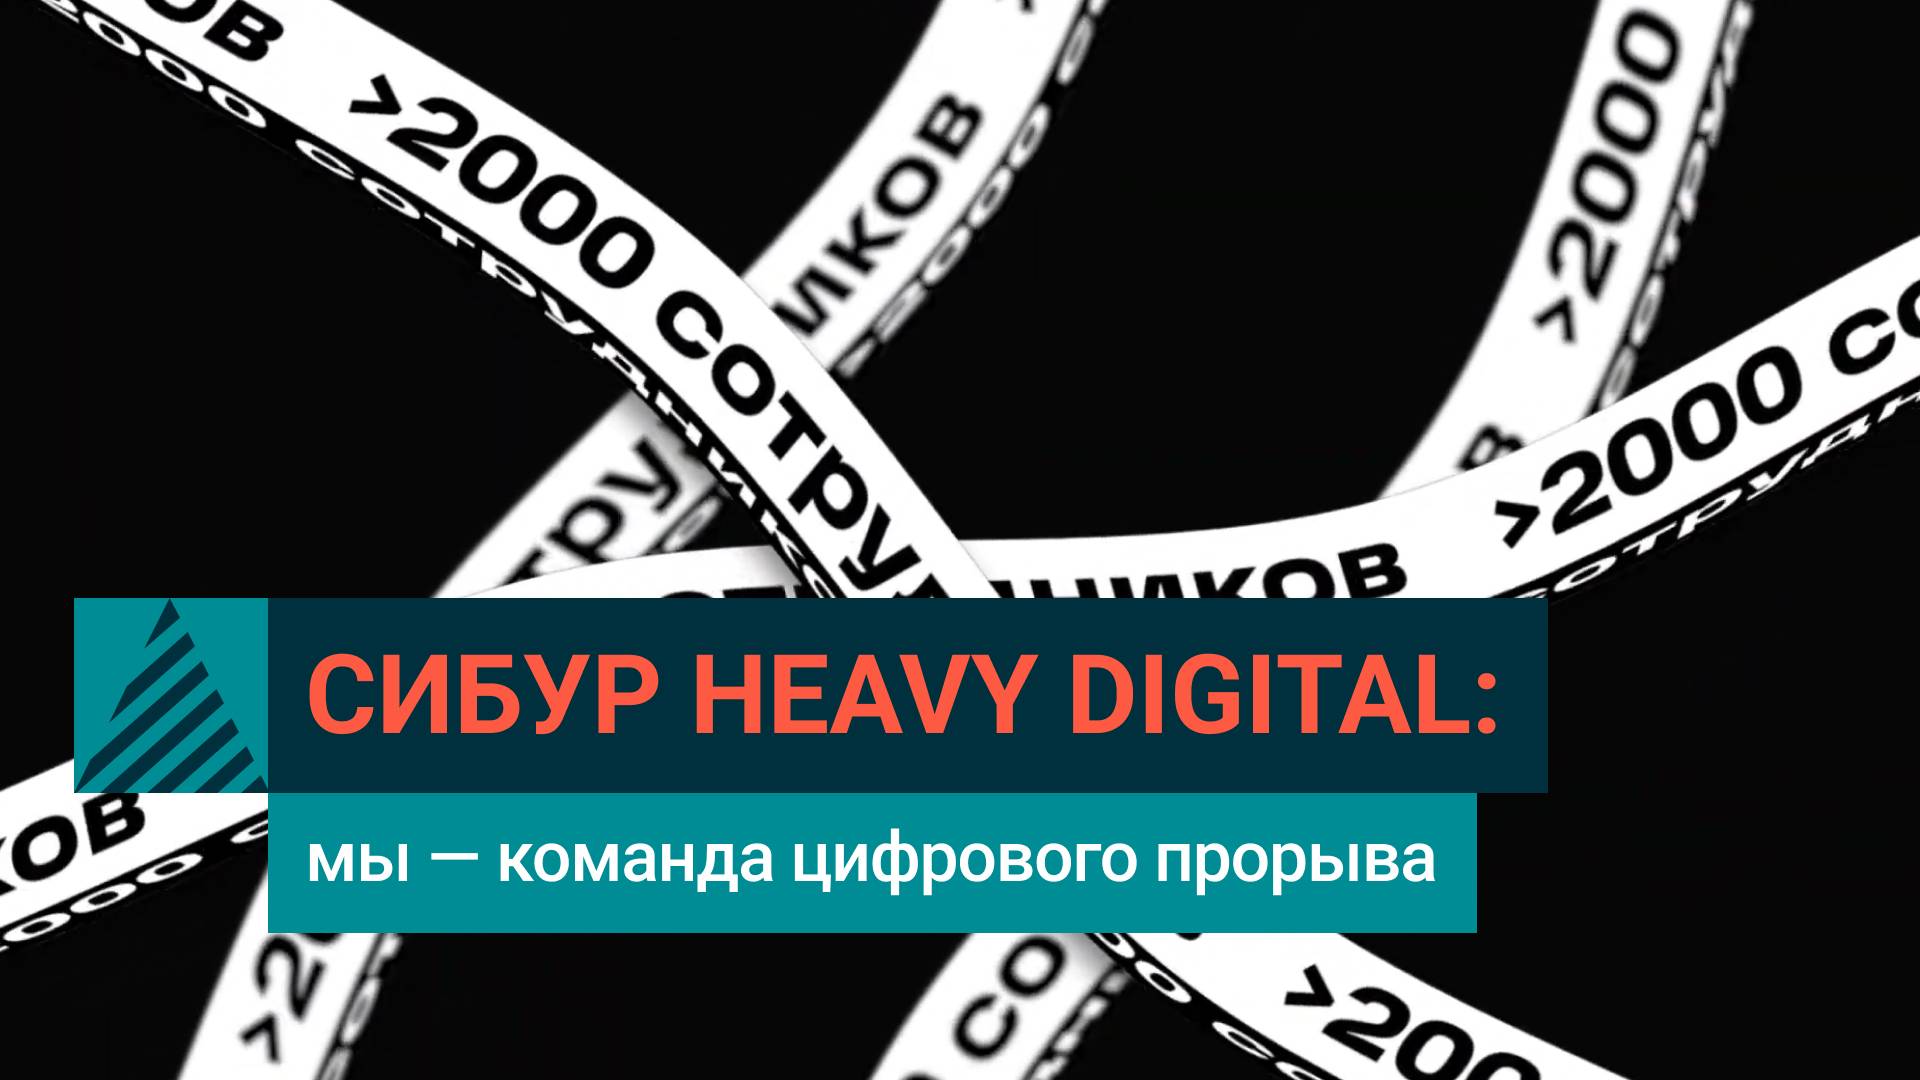 СИБУР Цифровой: технологии меняют промышленность | Heavy Digital